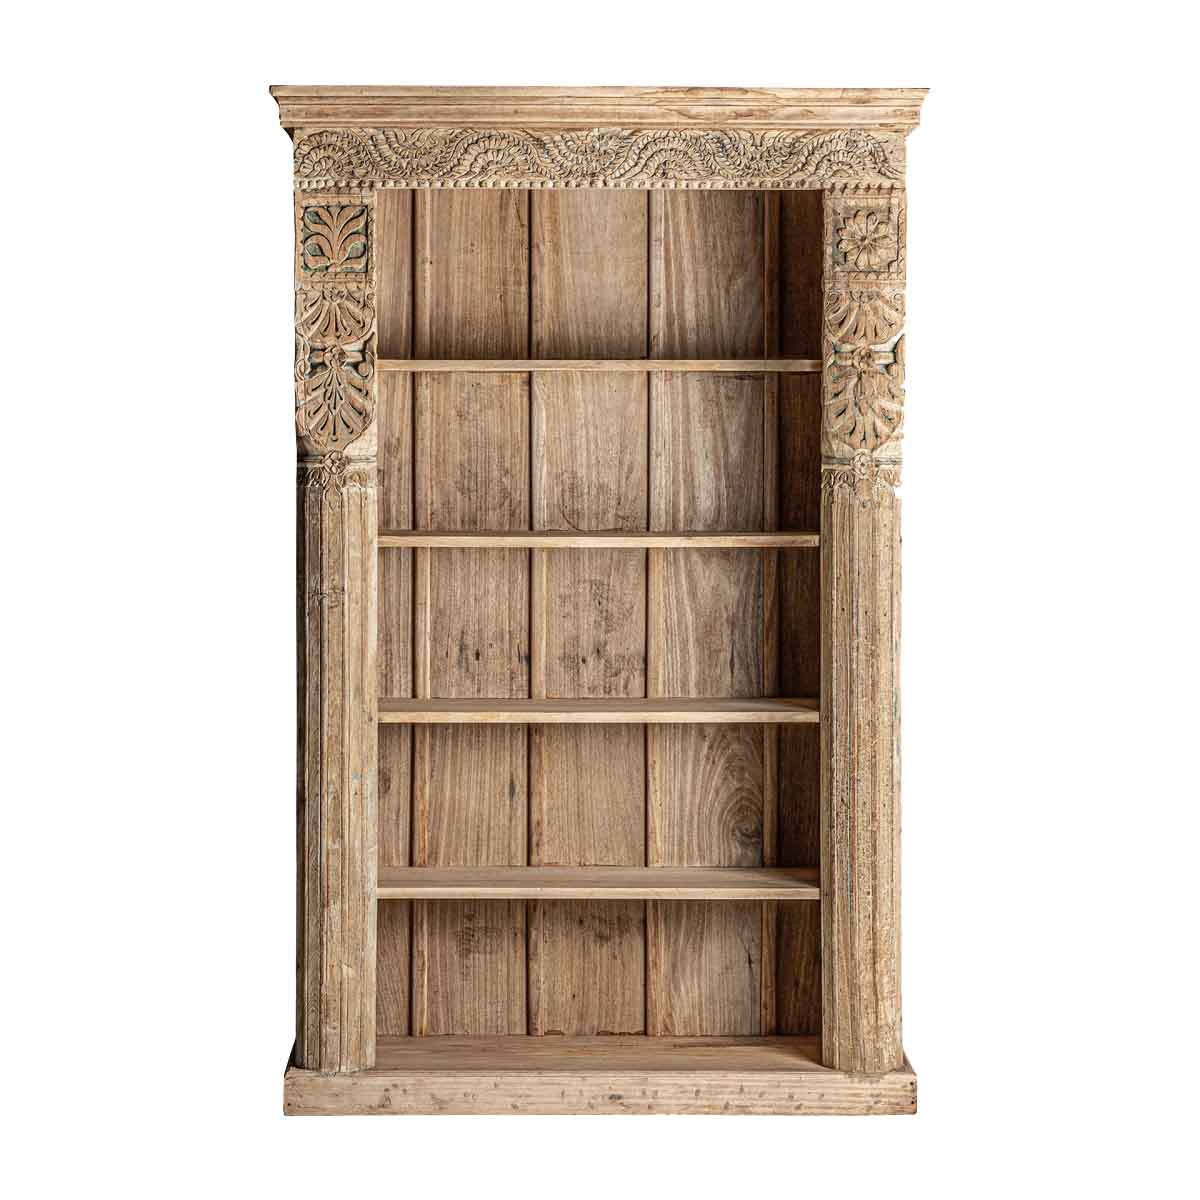 Levně Estila Etno dřevěná knihovna Maleesa přírodní hnědé barvy s pěti poličkami a ornamentálním vyřezáváním 195cm